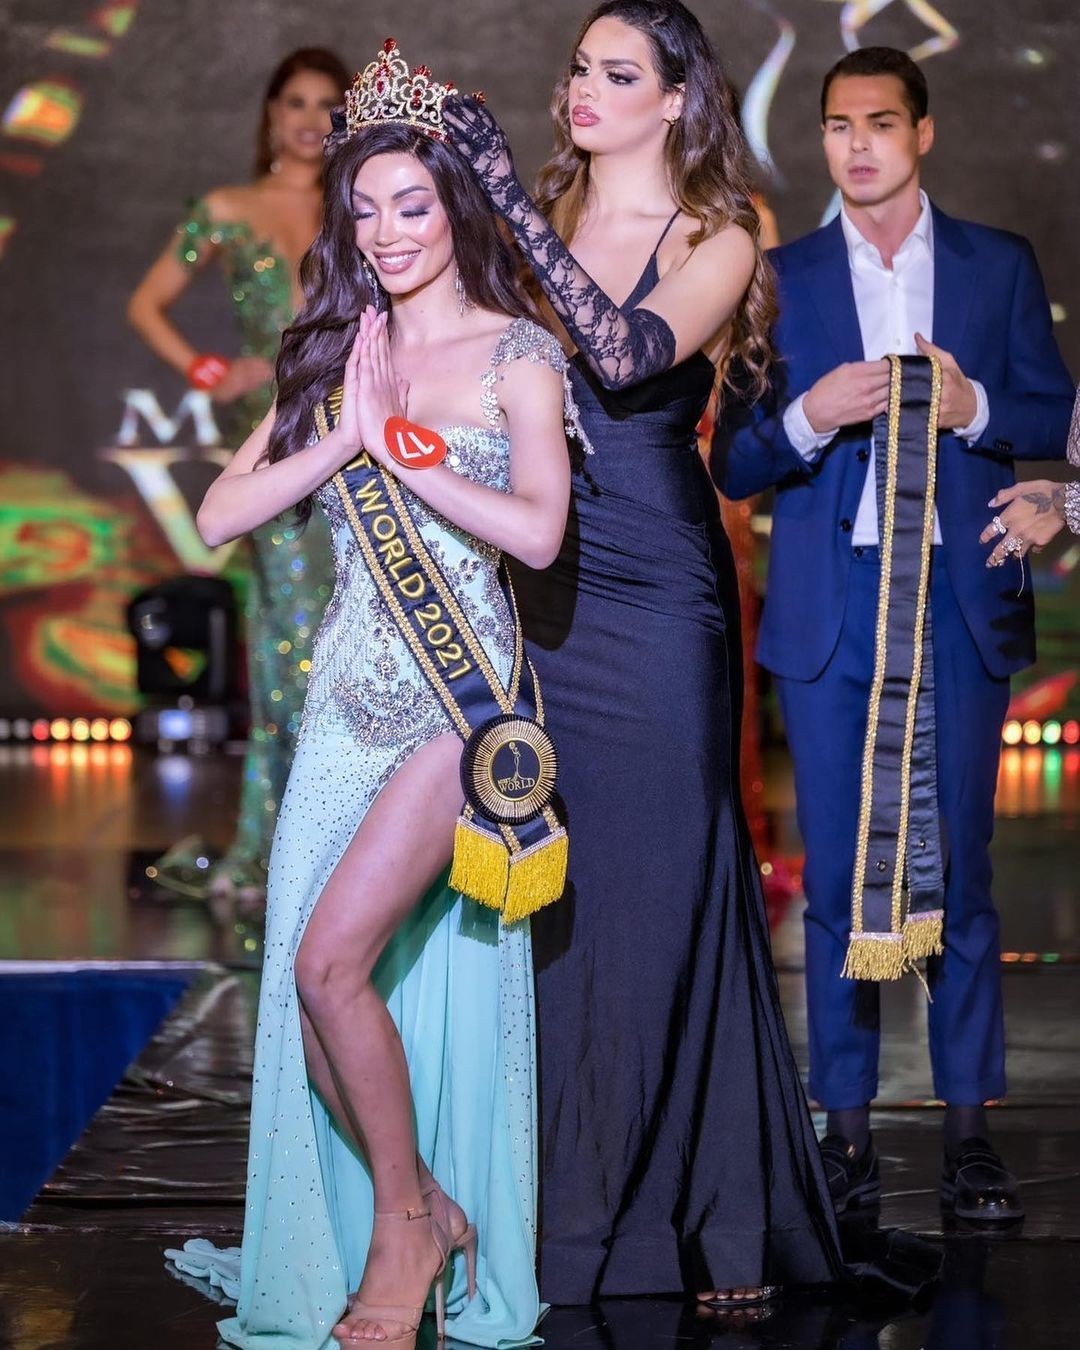 Modelo trans brasileira vence concurso mundial de beleza na Itália: 'Me sinto orgulhosa da mulher que me tornei'